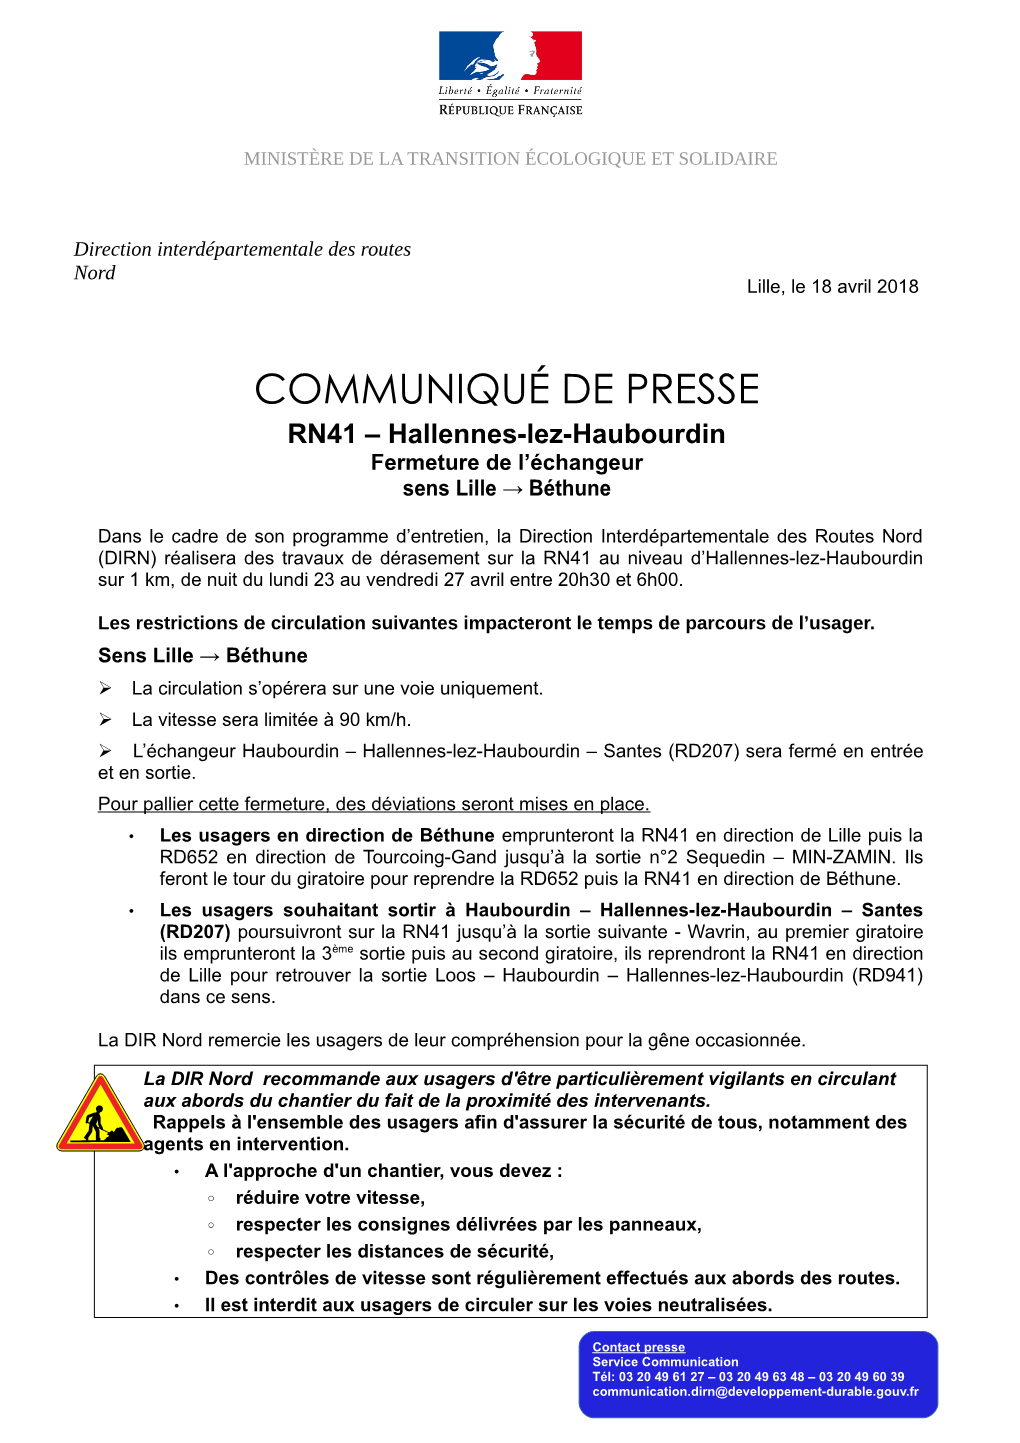 COMMUNIQUÉ DE PRESSE RN41 – Hallennes-Lez-Haubourdin Fermeture De L’Échangeur Sens Lille → Béthune